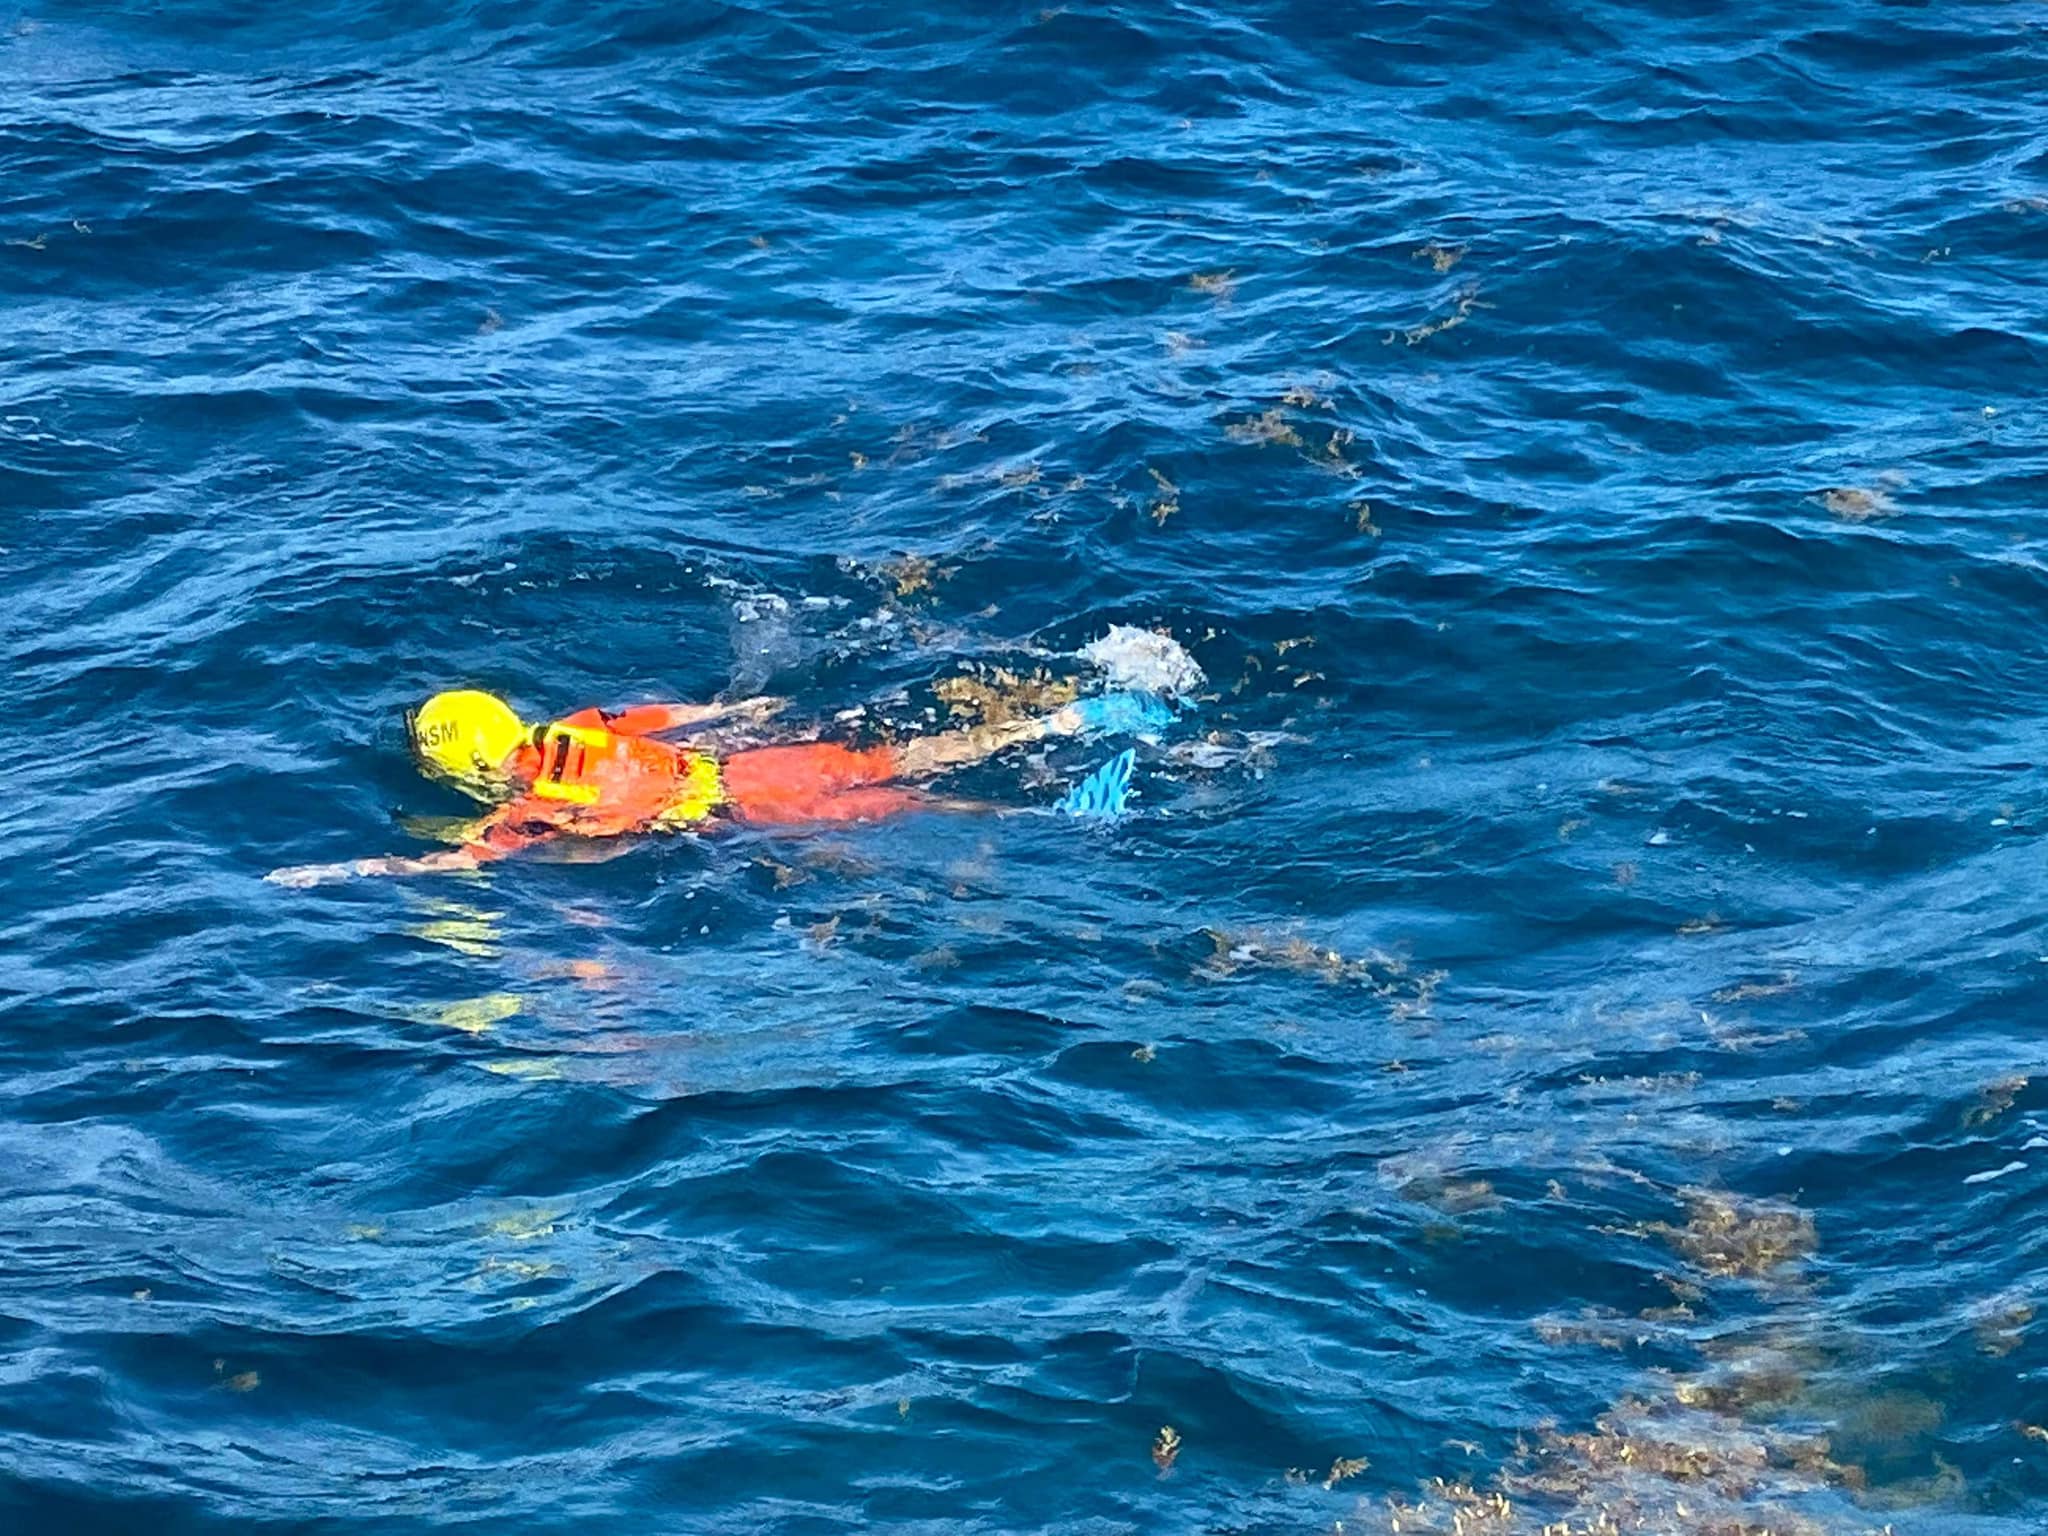     Trois hommes recherchés en mer après le naufrage d’un bateau de pêche au large de Capesterre-Belle-Eau

